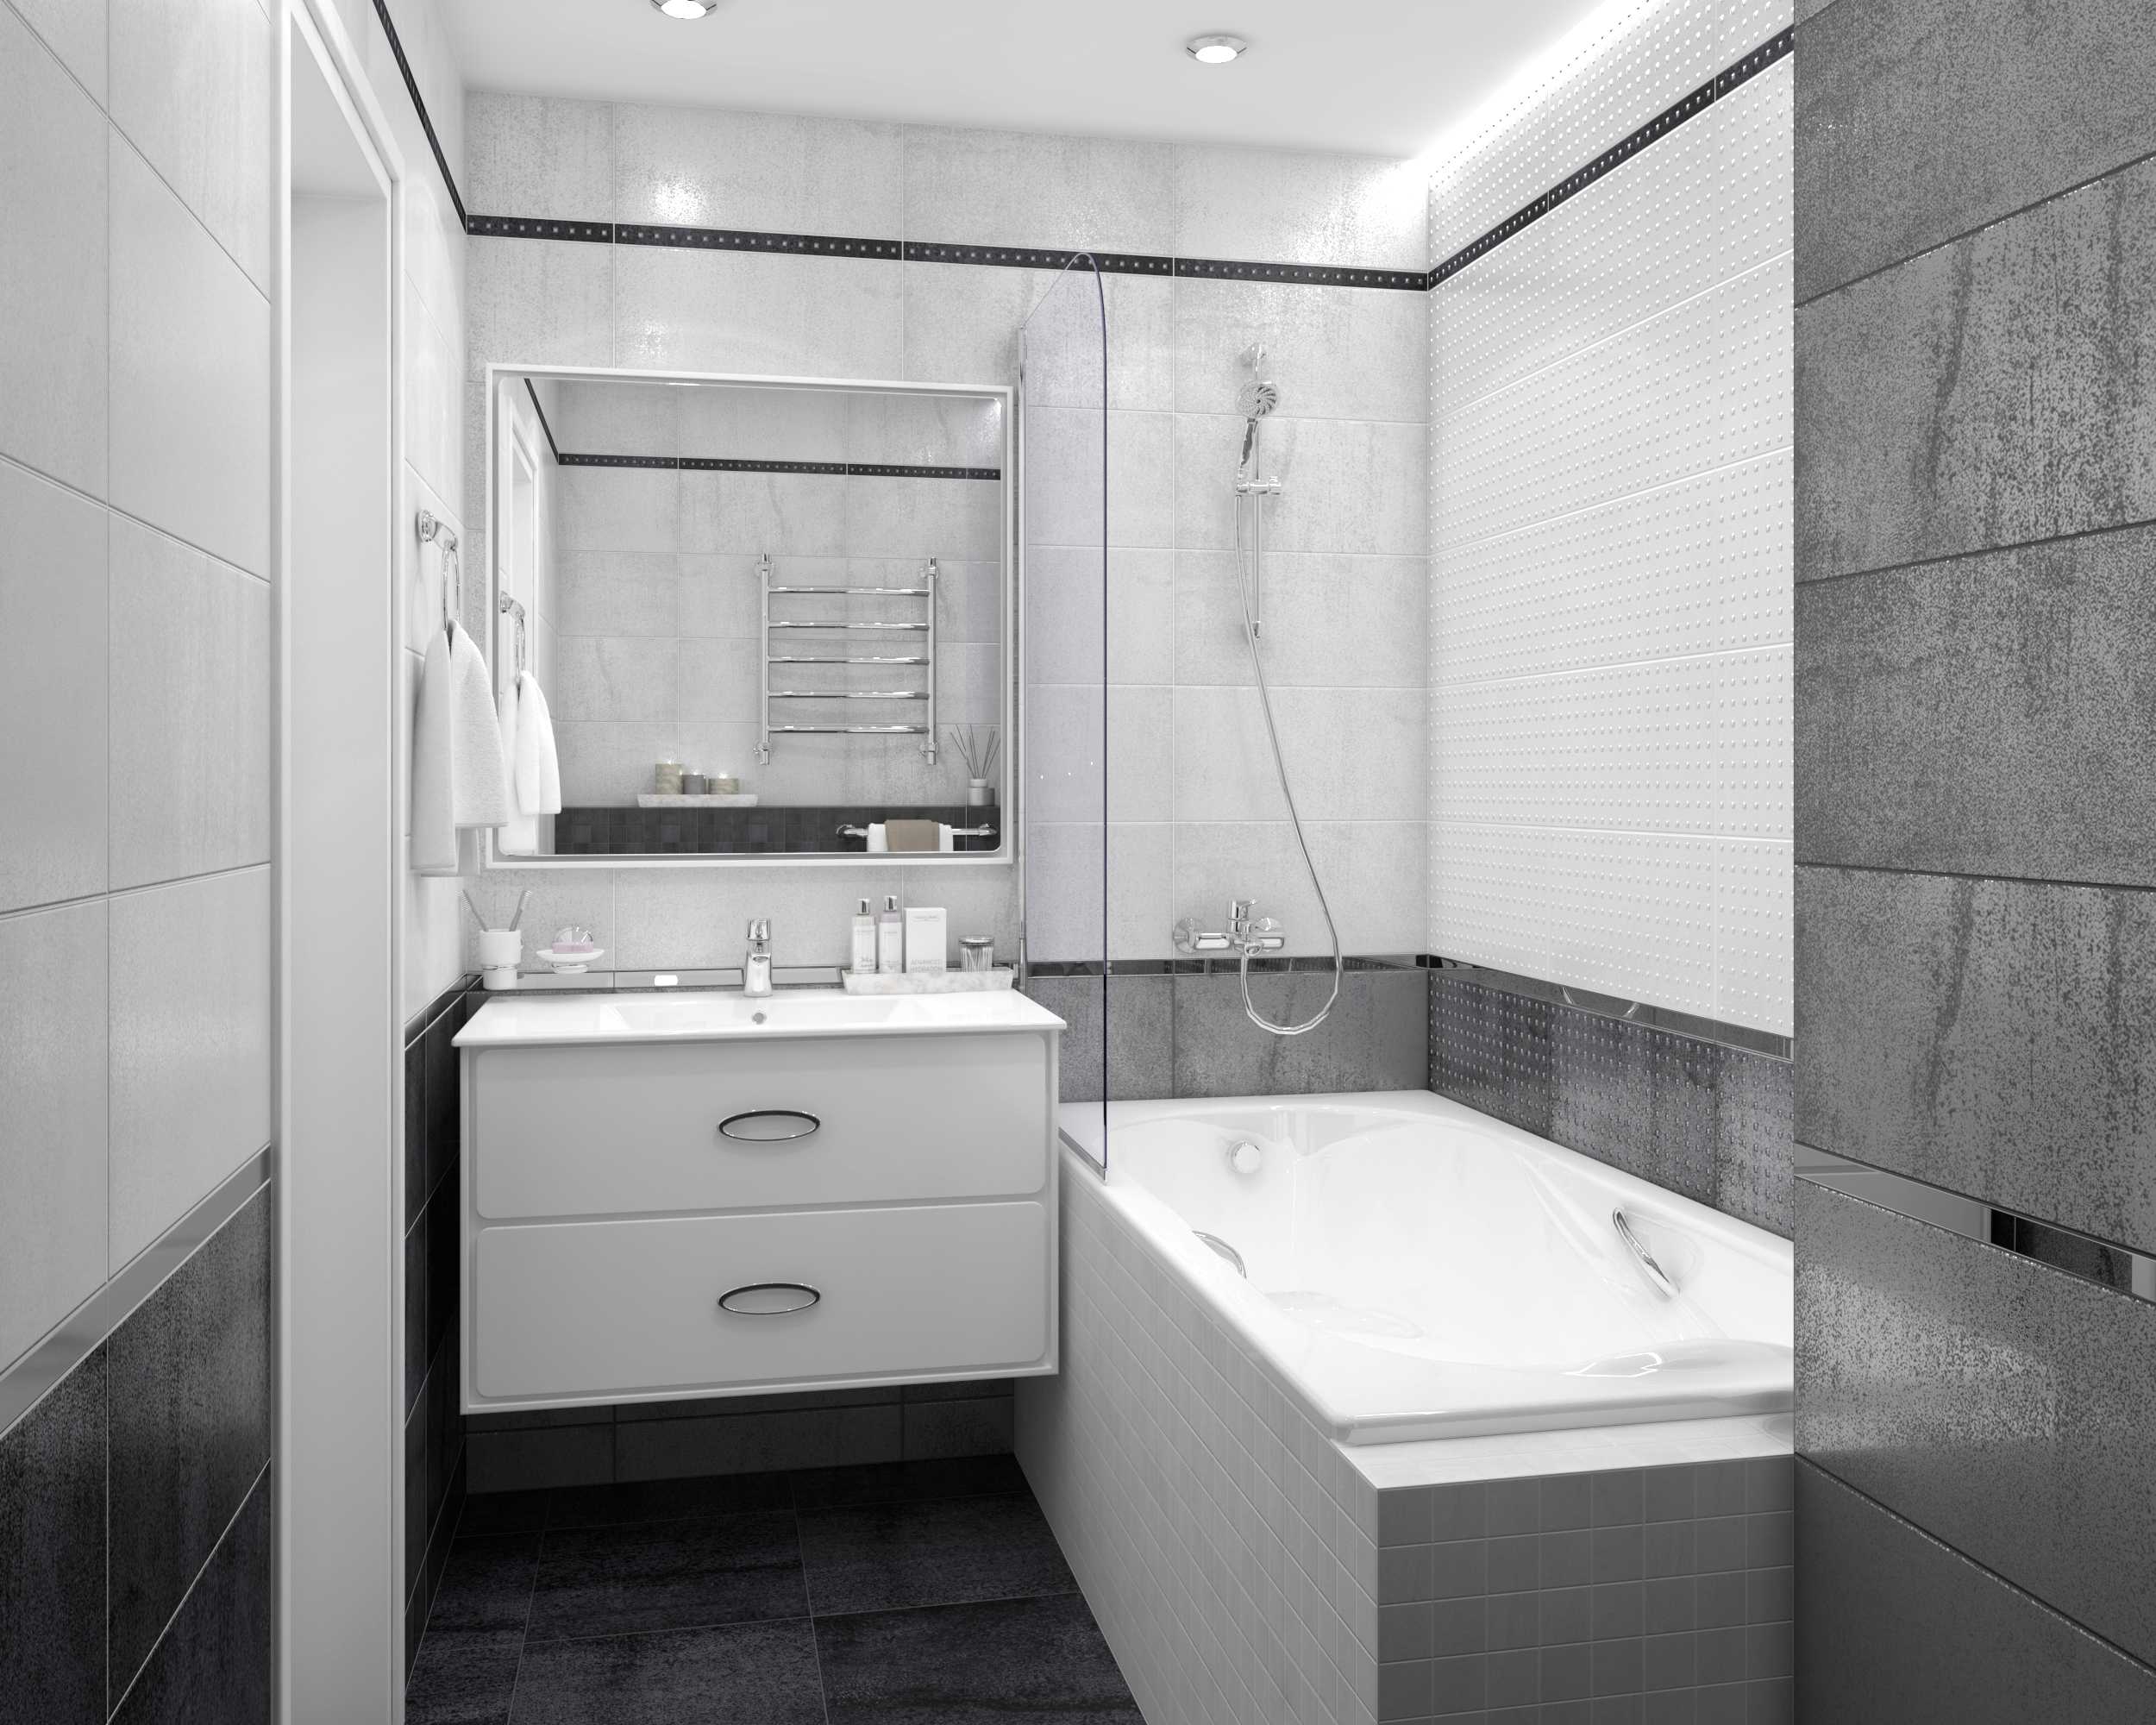 Все что вы читали про дизайн маленьких ванных скорее всего бред Я подготовил 9 адекватных применимых советов со схемами и 103 реальных фото из обычных квартир